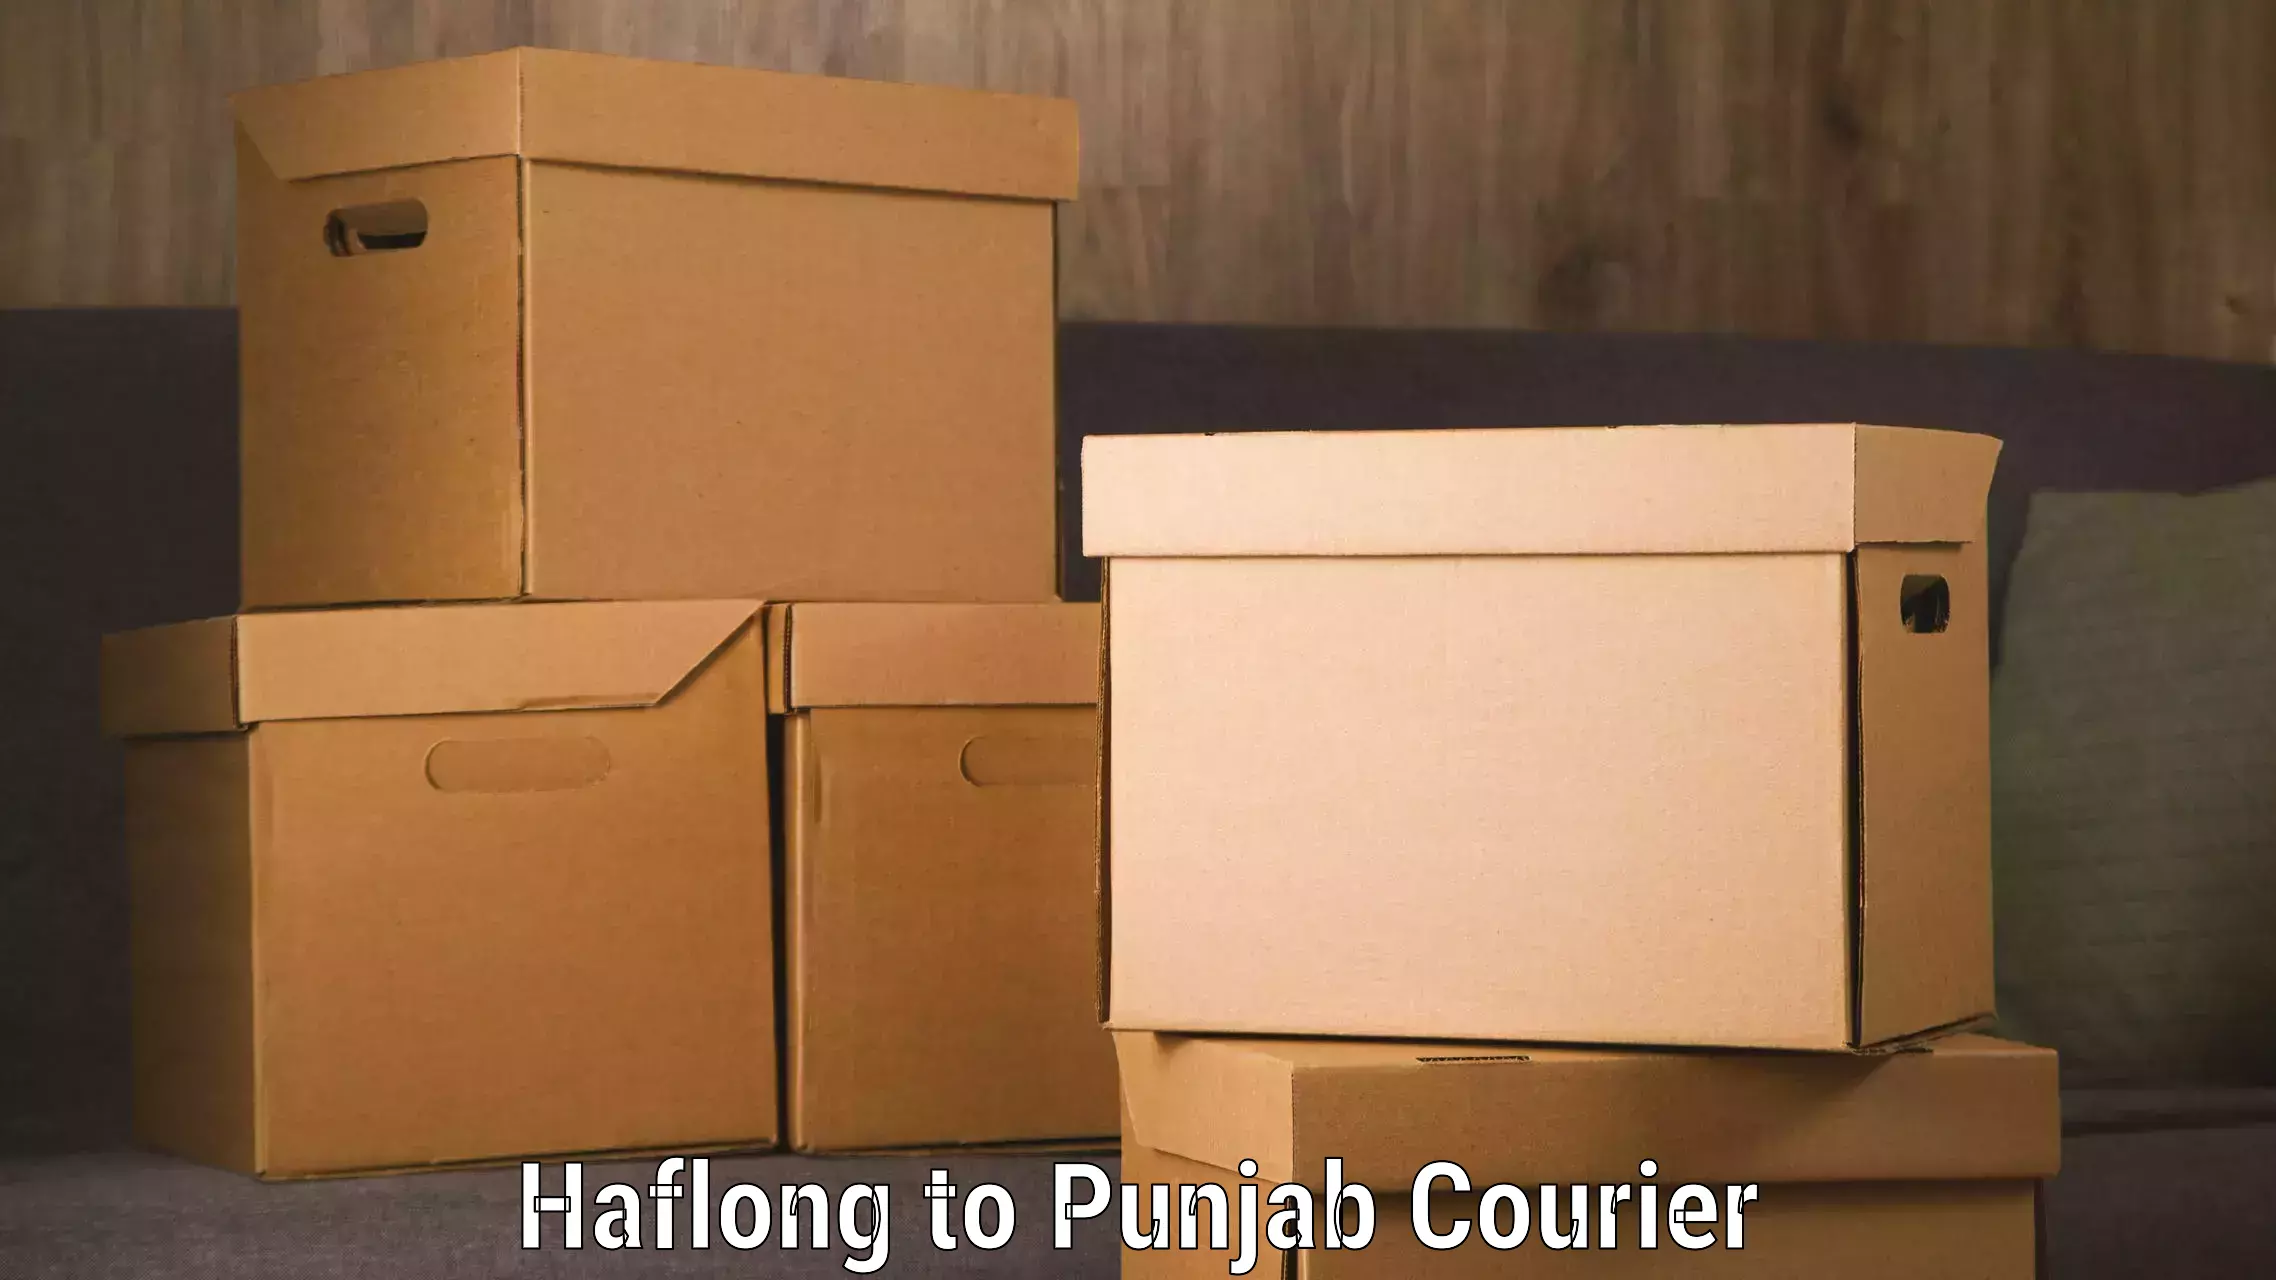 Door-to-door baggage service Haflong to Punjab